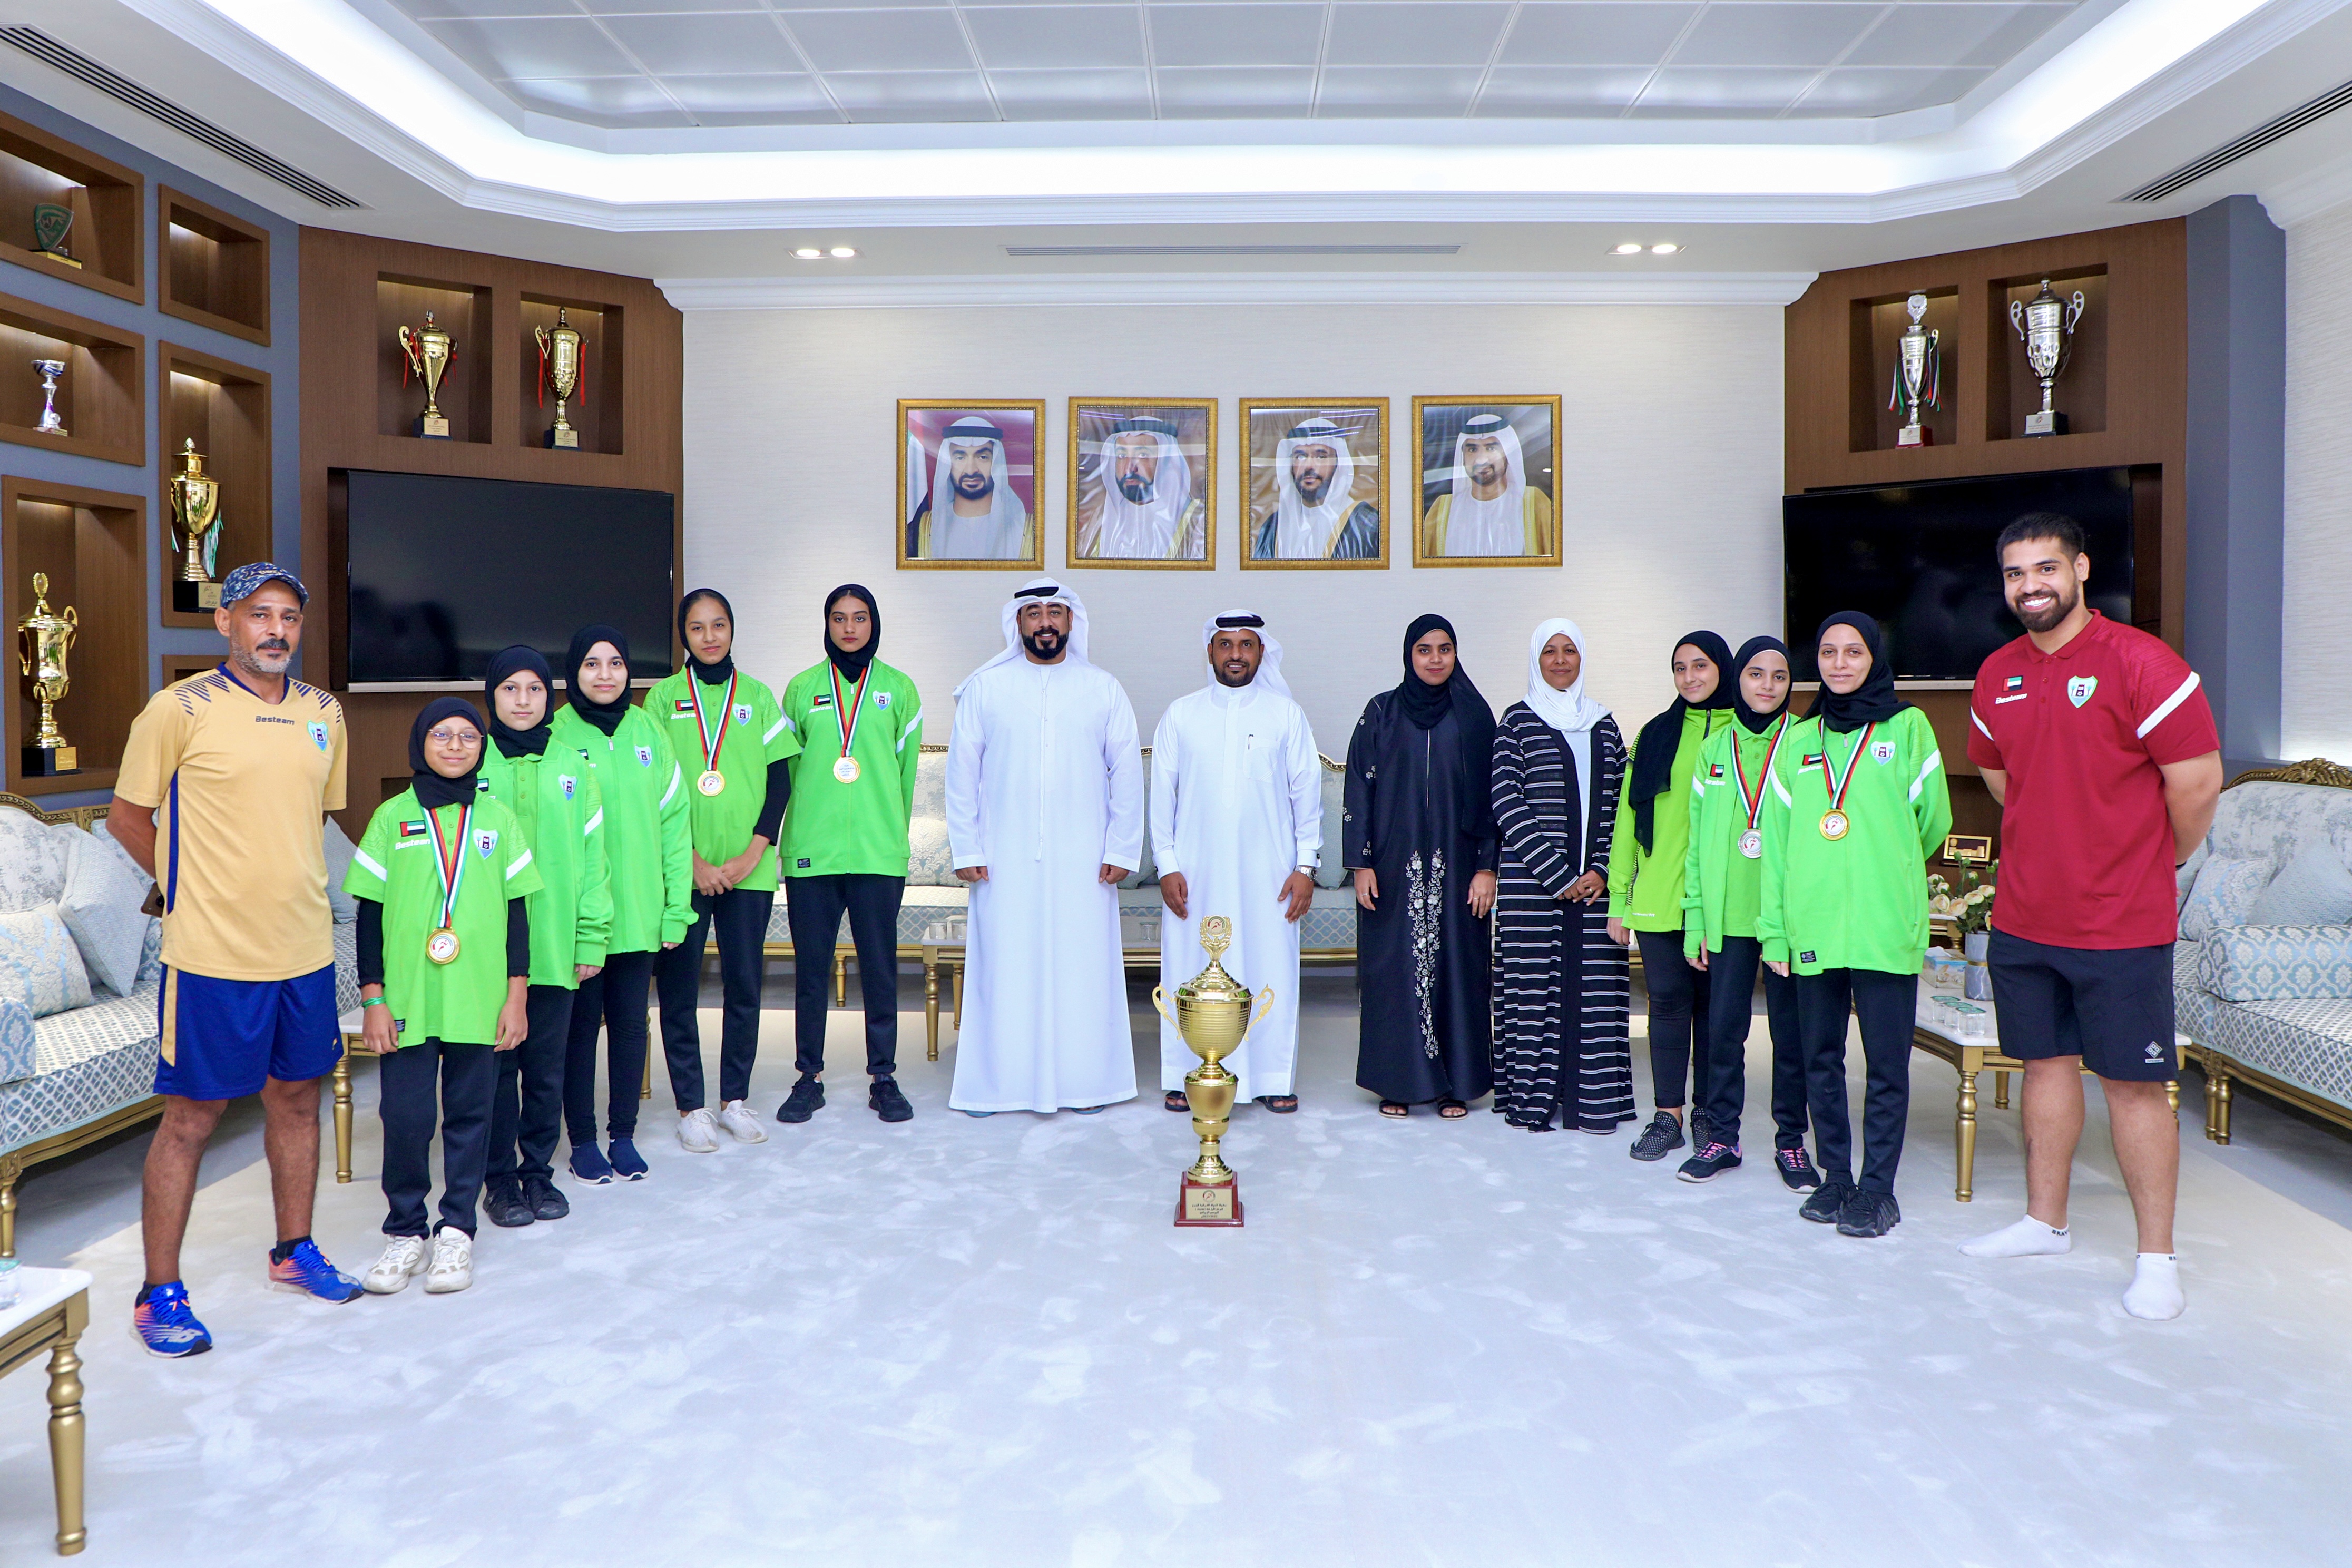 نادي دبا الحصن يكرم بطلاته لألعاب القوى في تحقيقهن لإنجاز رياضي جديد ويشيد بمستوياتهن الواعدة